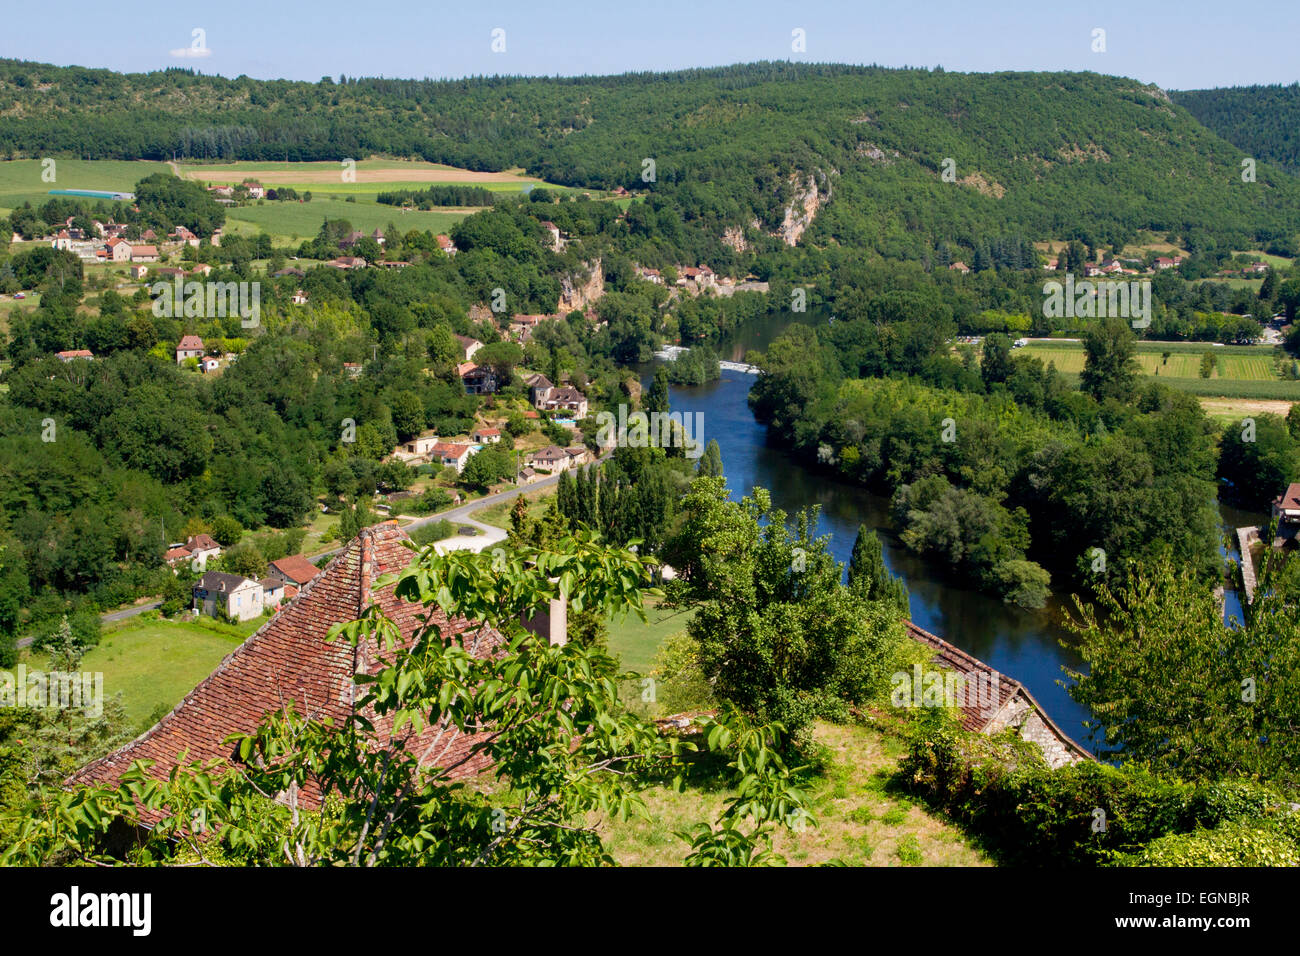 La rivière Lot et campagne environnante de village médiéval de Saint-Cirq-Lapopie, département du Lot, au sud-ouest de la France en août Banque D'Images